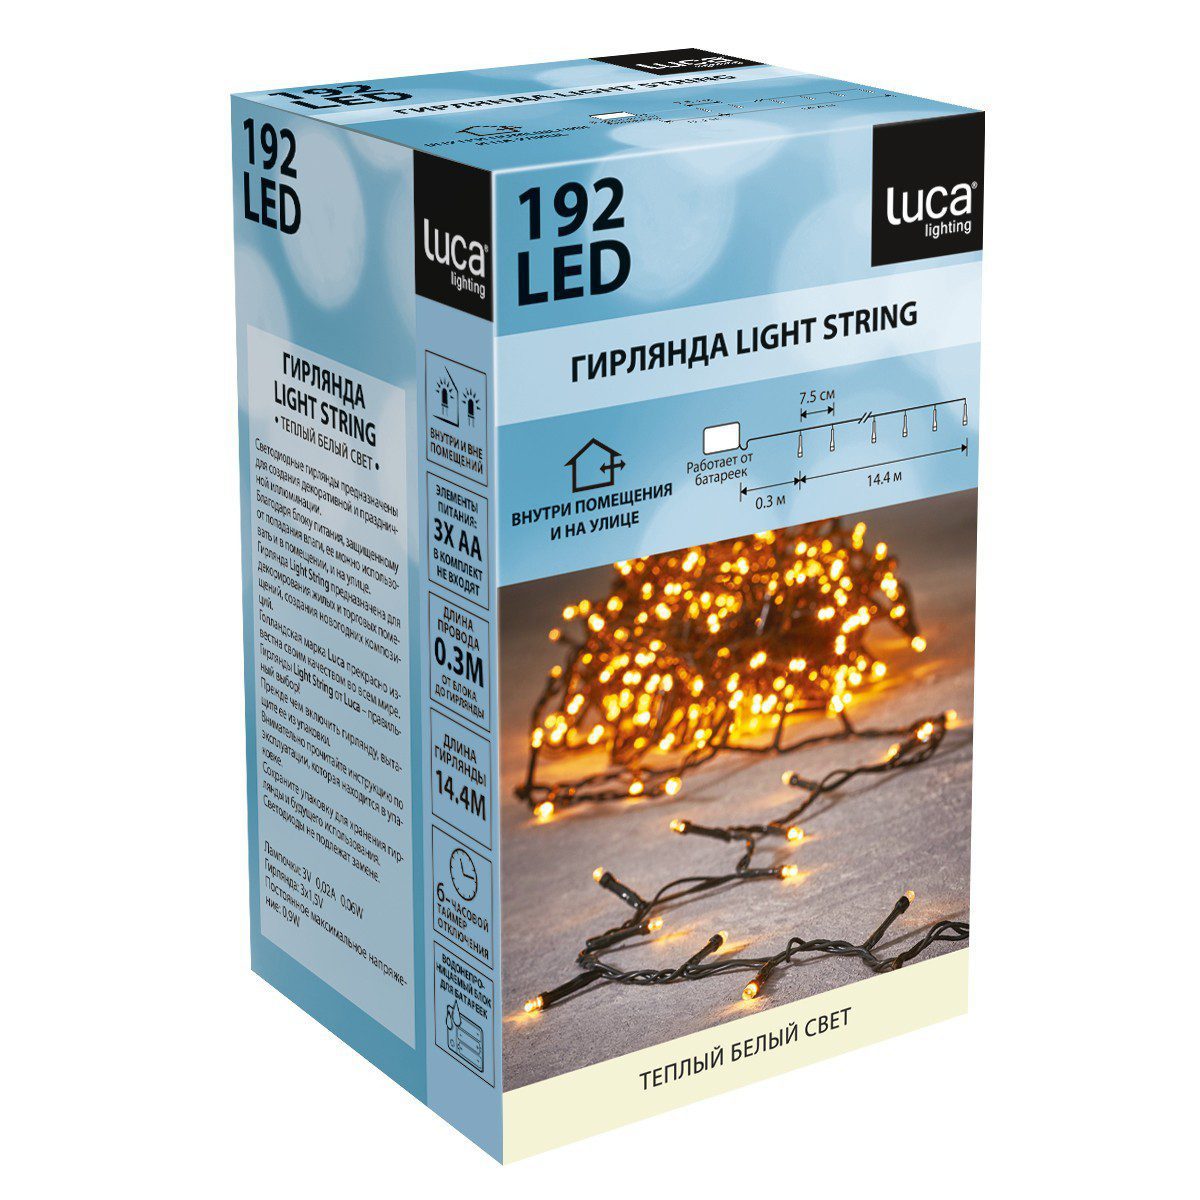 Гирлянда на батарейках Luca Lighting теплый белый свет с таймером отключения 6 часов (192 ламп, длина гирлянды 1440 см)